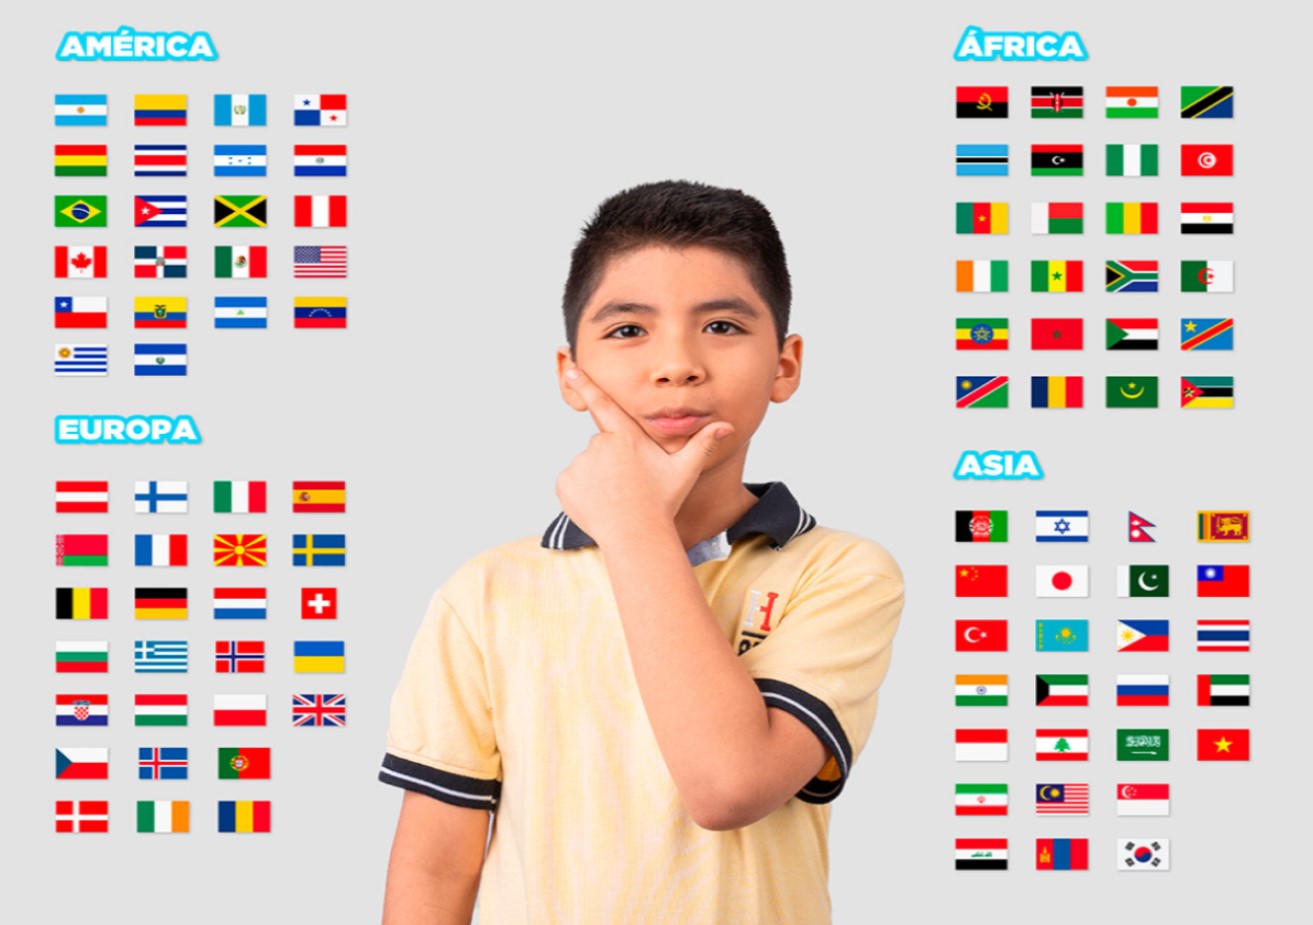 Póster: Banderas del mundo y sus capitales